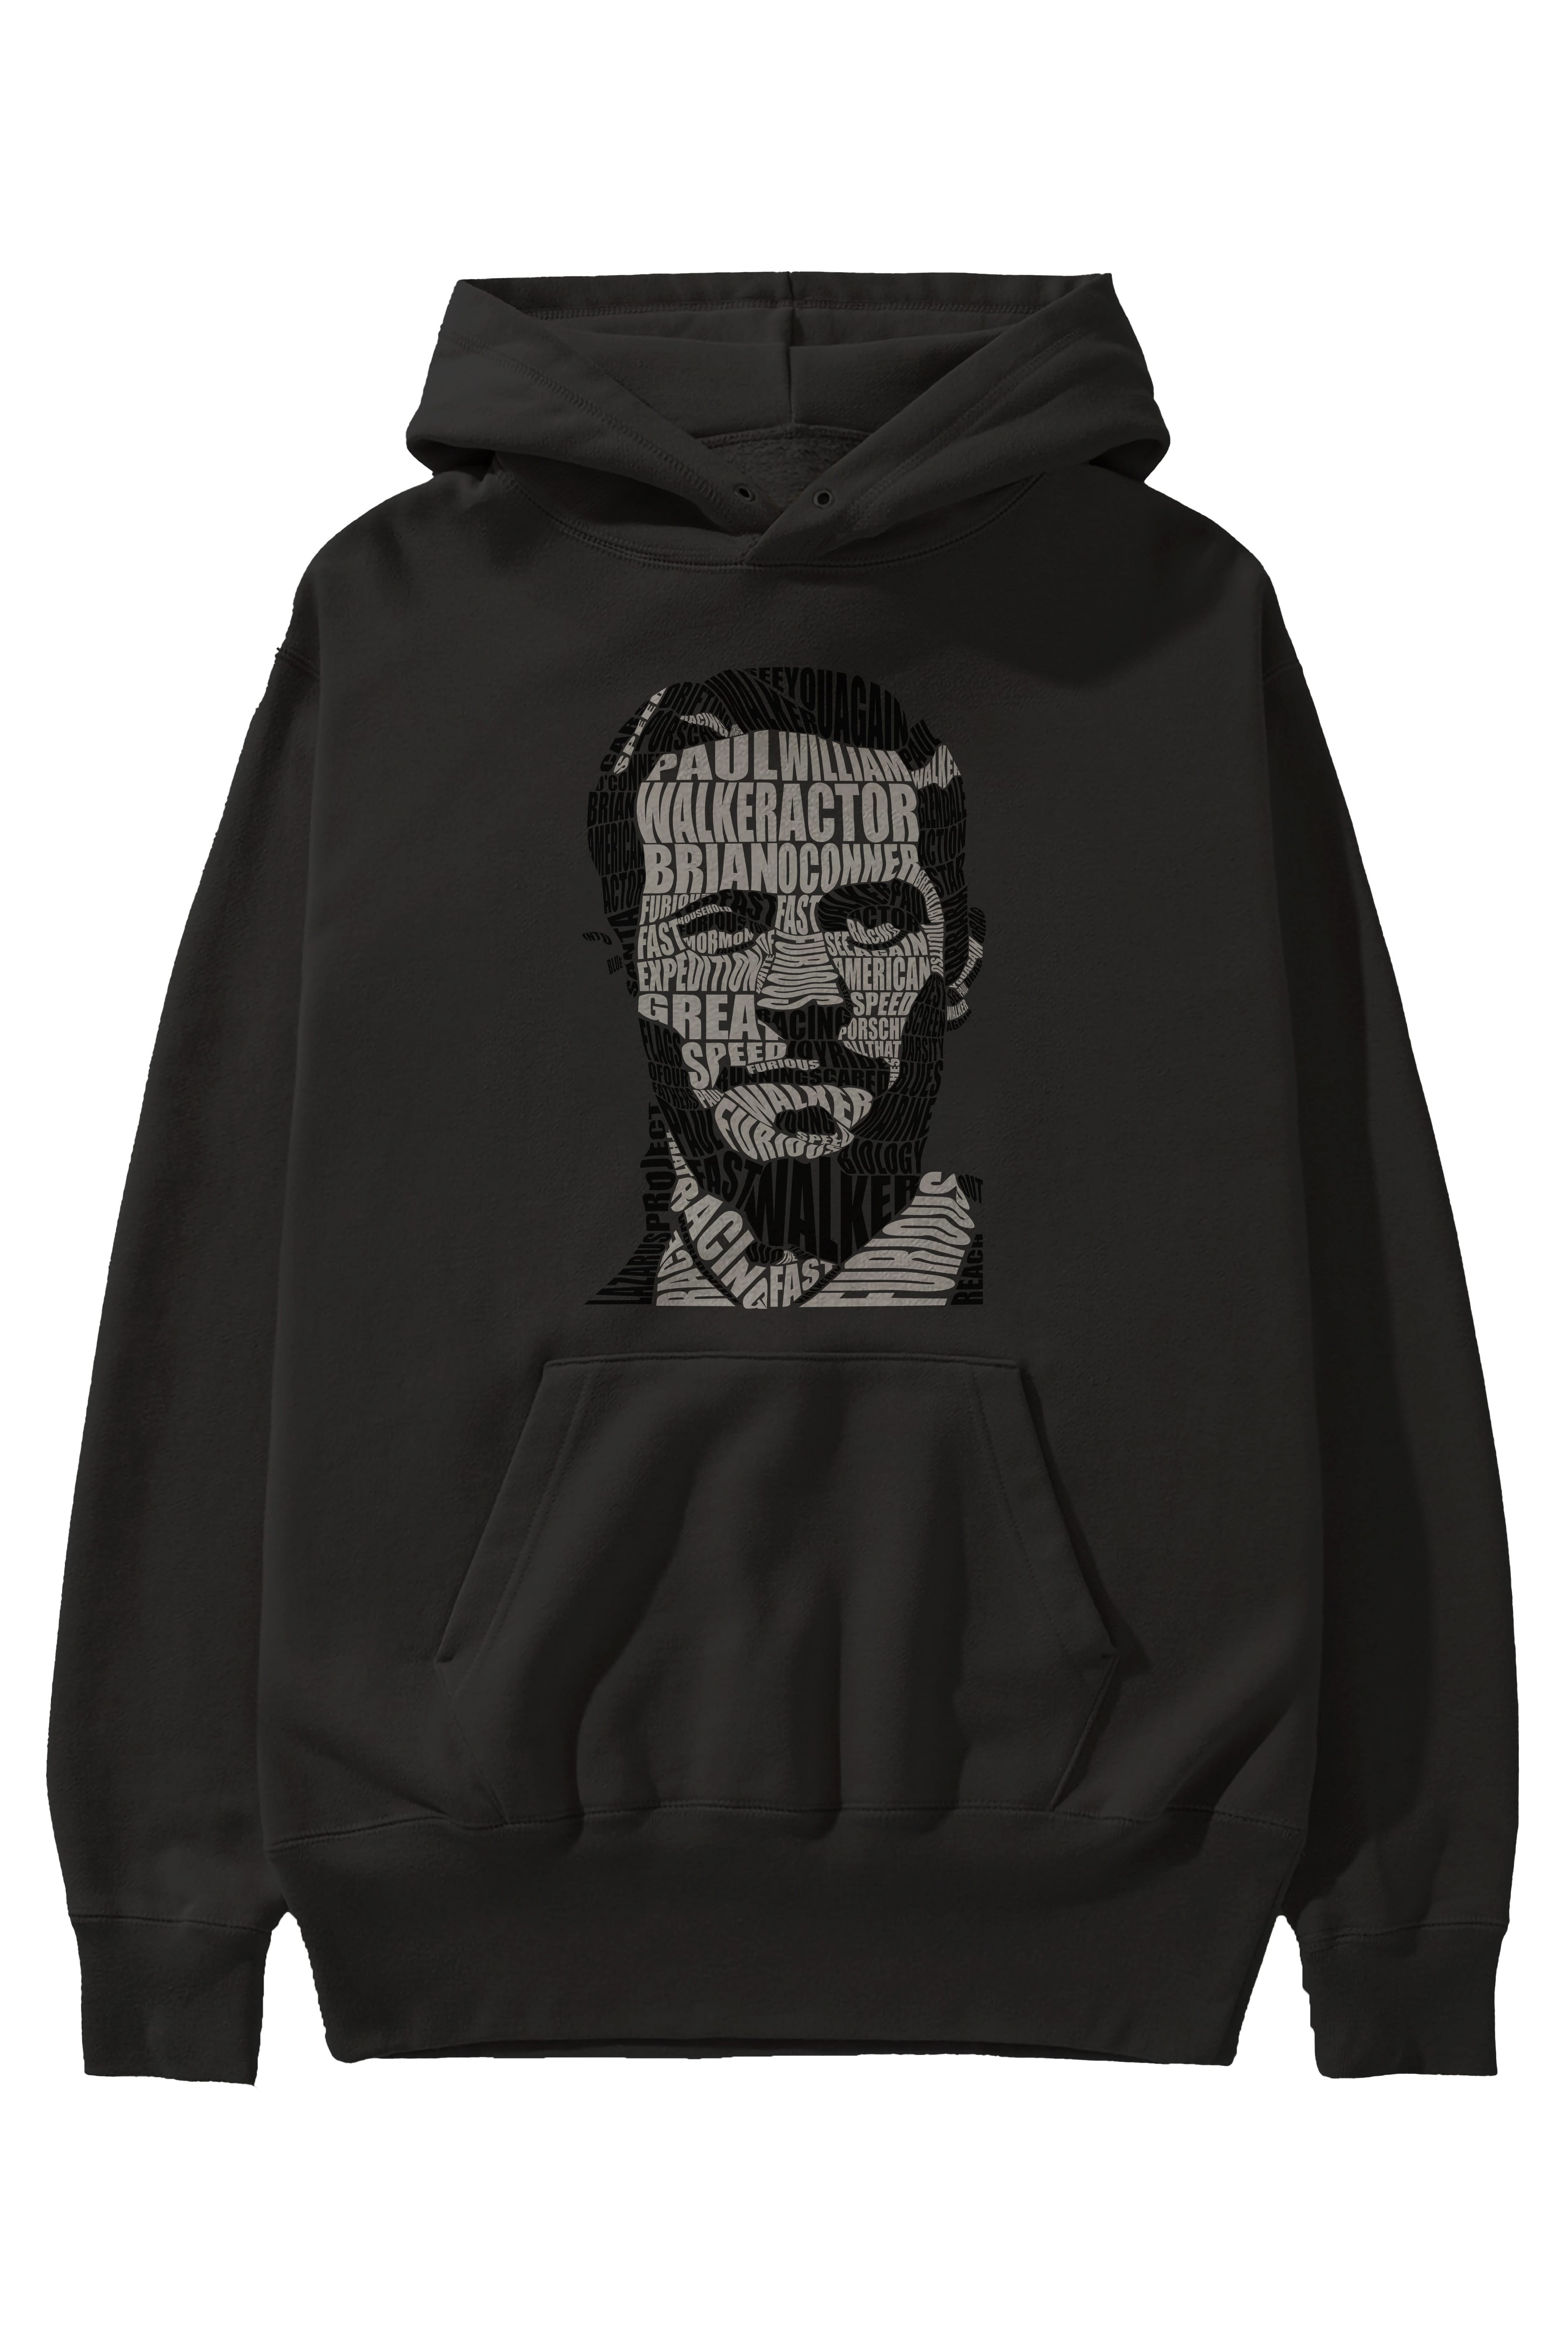 Paul Walker Calligram Ön Baskılı Hoodie Oversize Kapüşonlu Sweatshirt Erkek Kadın Unisex